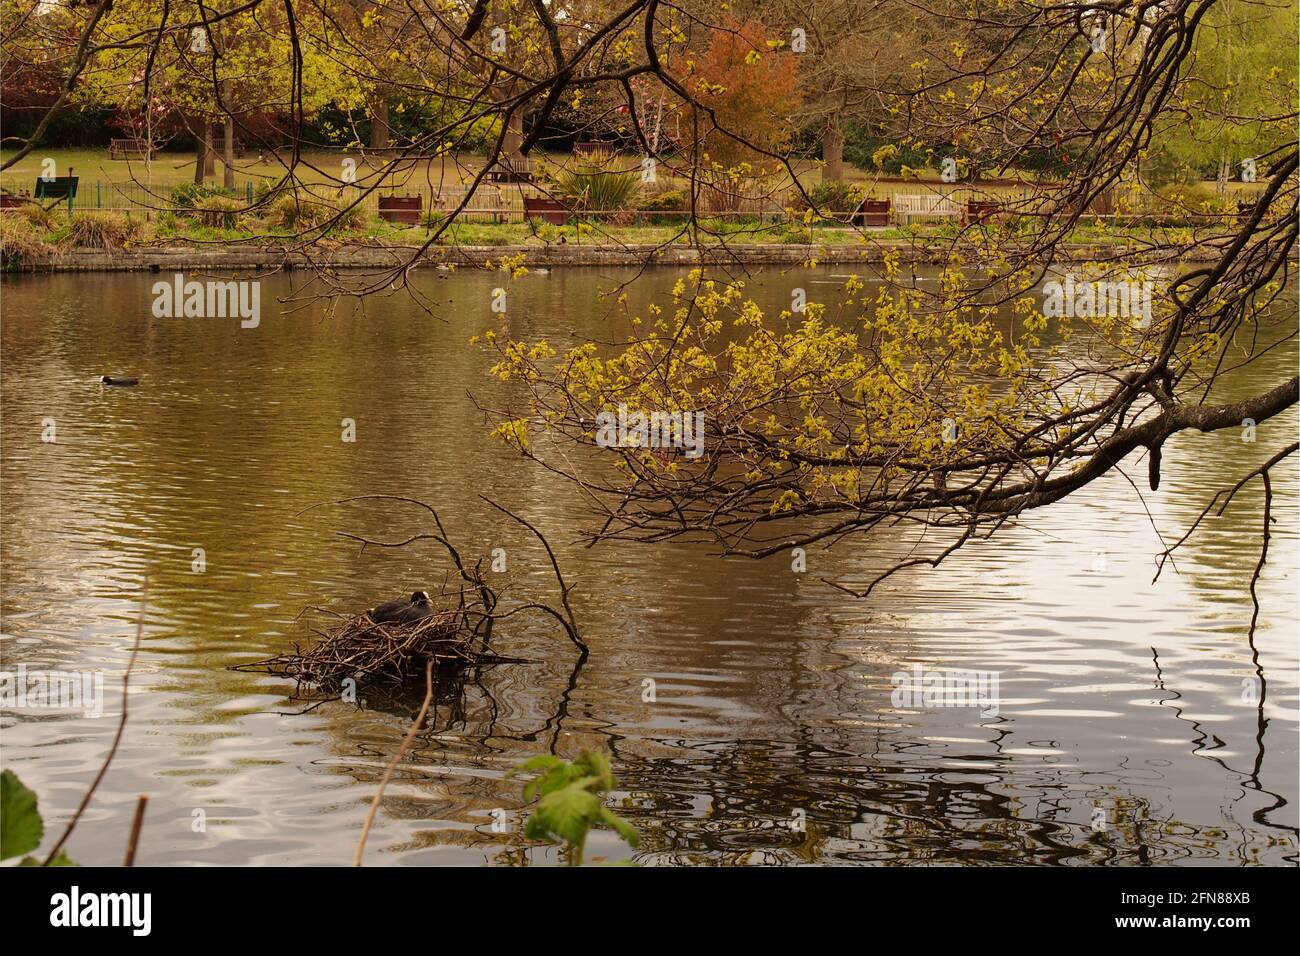 Une vue de l'autre côté d'un lac dans un parc public où un coot nichant l'eau et un arbre qui encadrent l'image Banque D'Images